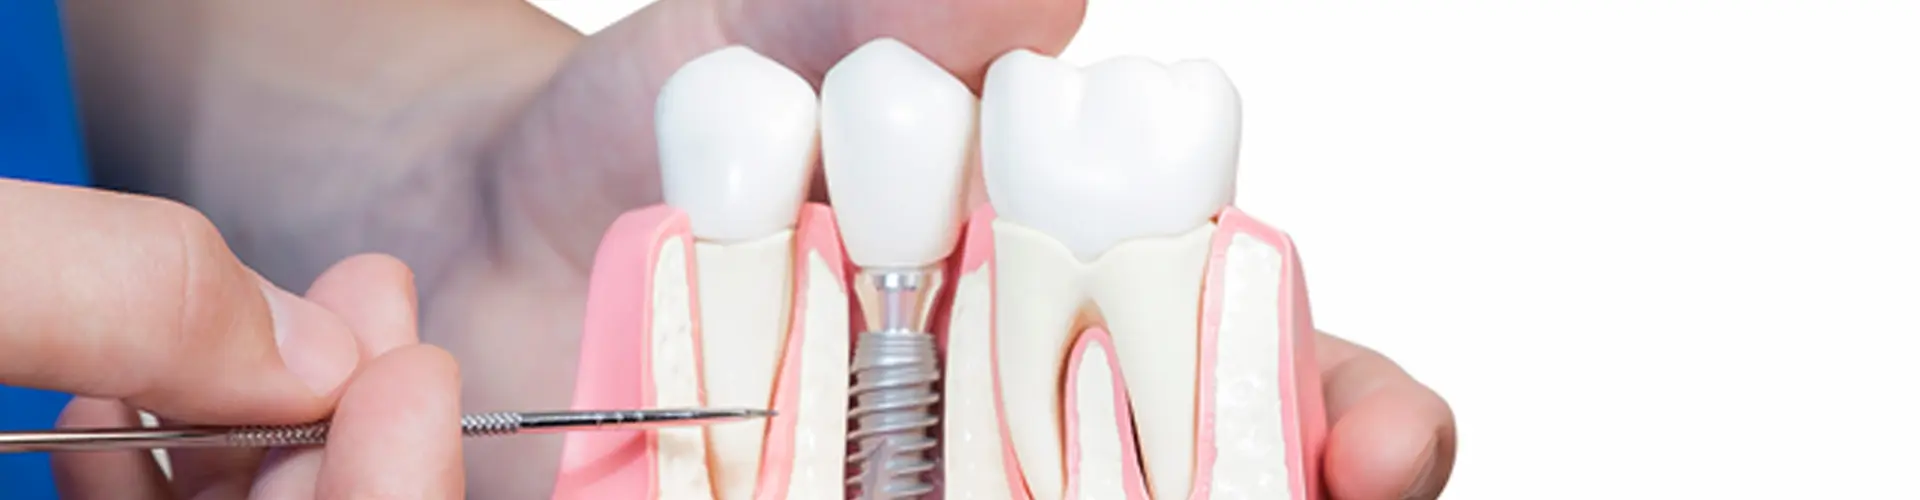 Showing Dental Implants